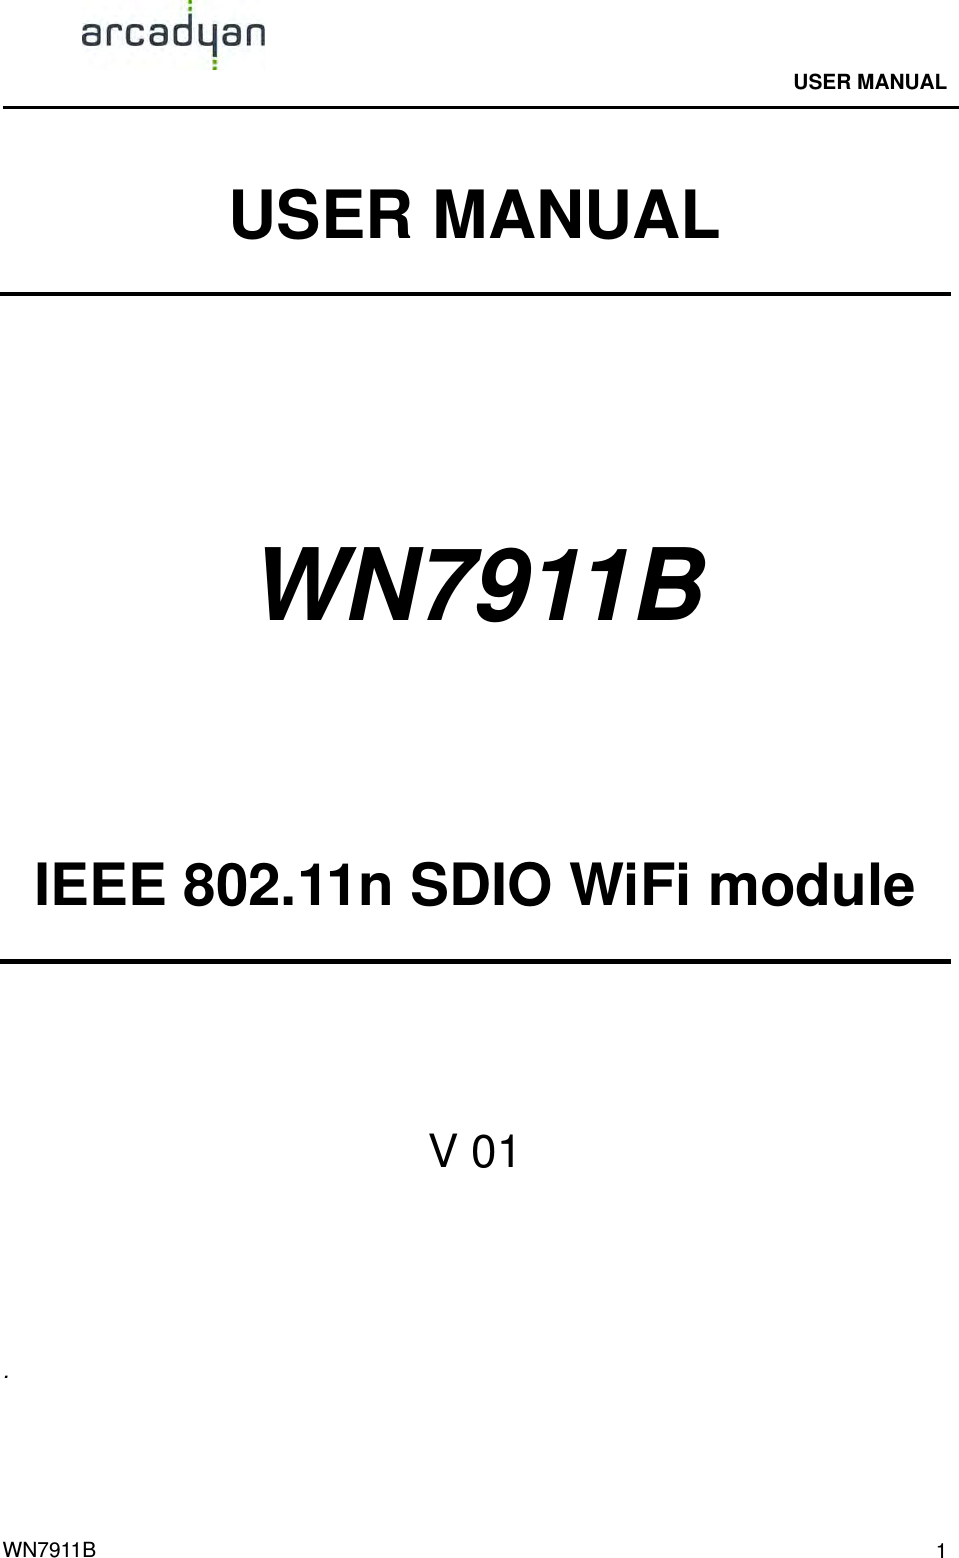                                              USER MANUAL                                              WN7911B  1USER MANUAL   WN7911B     IEEE 802.11n SDIO WiFi module   V 01    . 